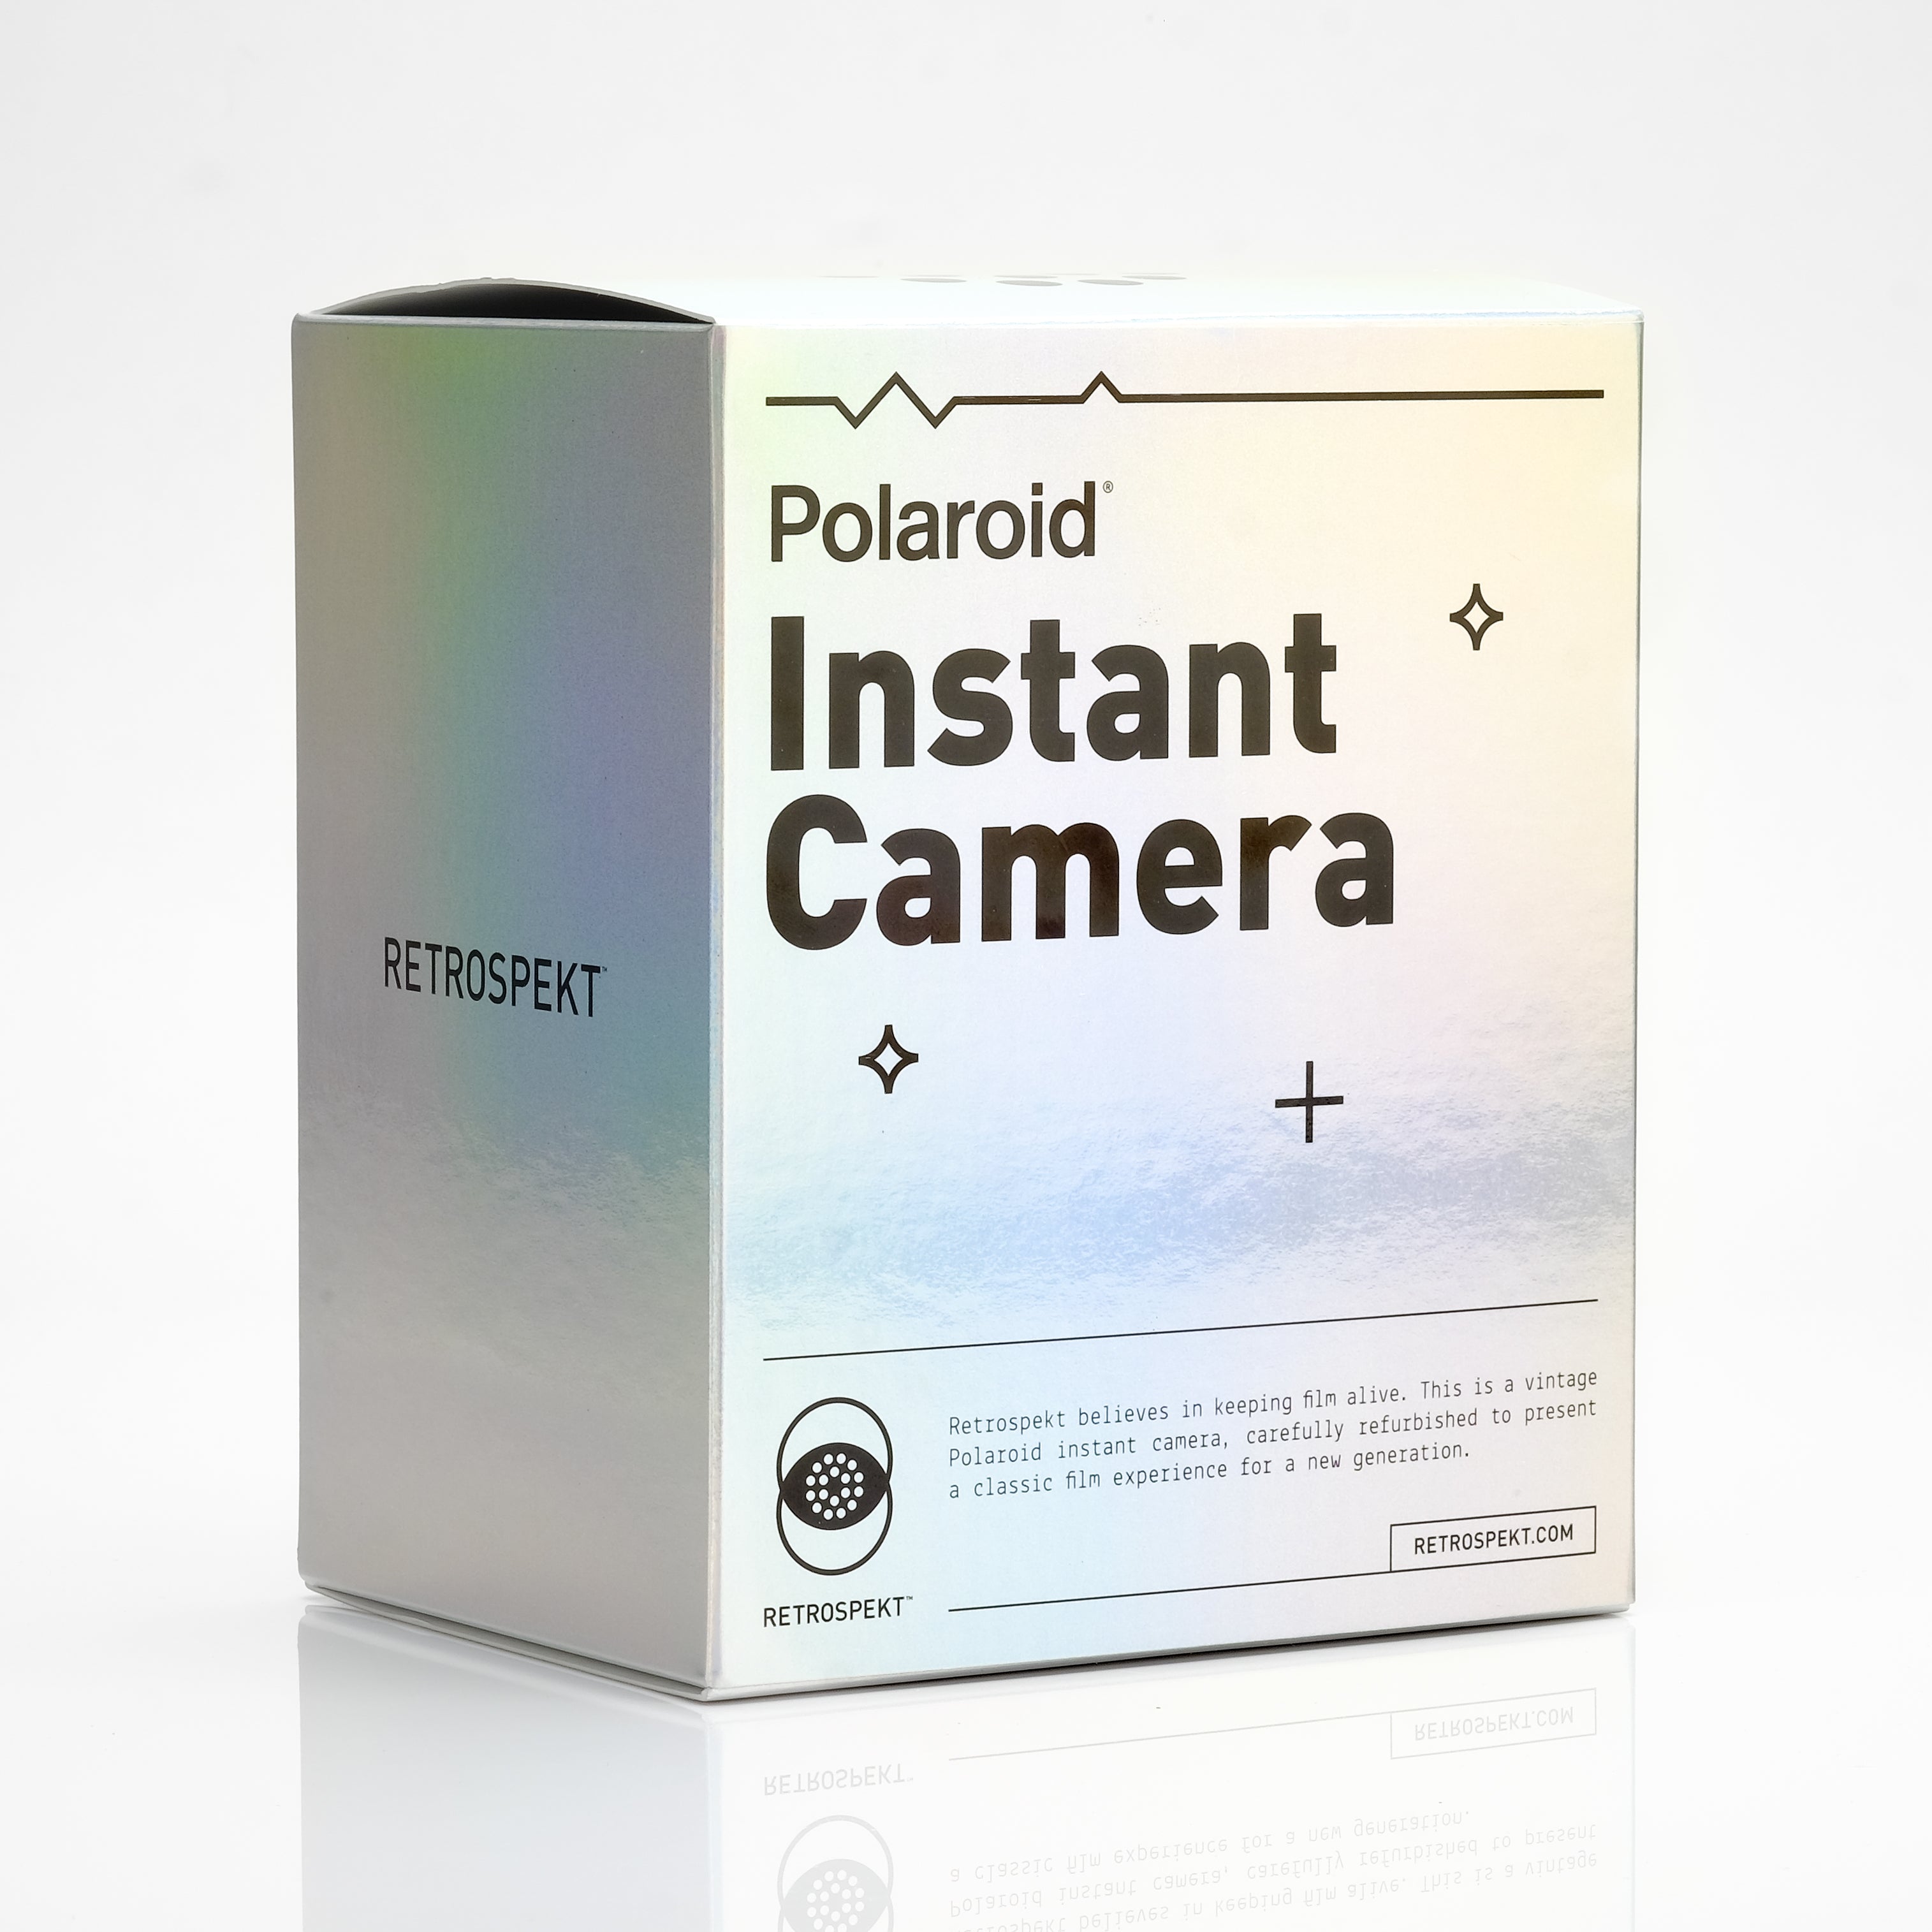 Polaroid 600 Mary Kay Instant Film Camera